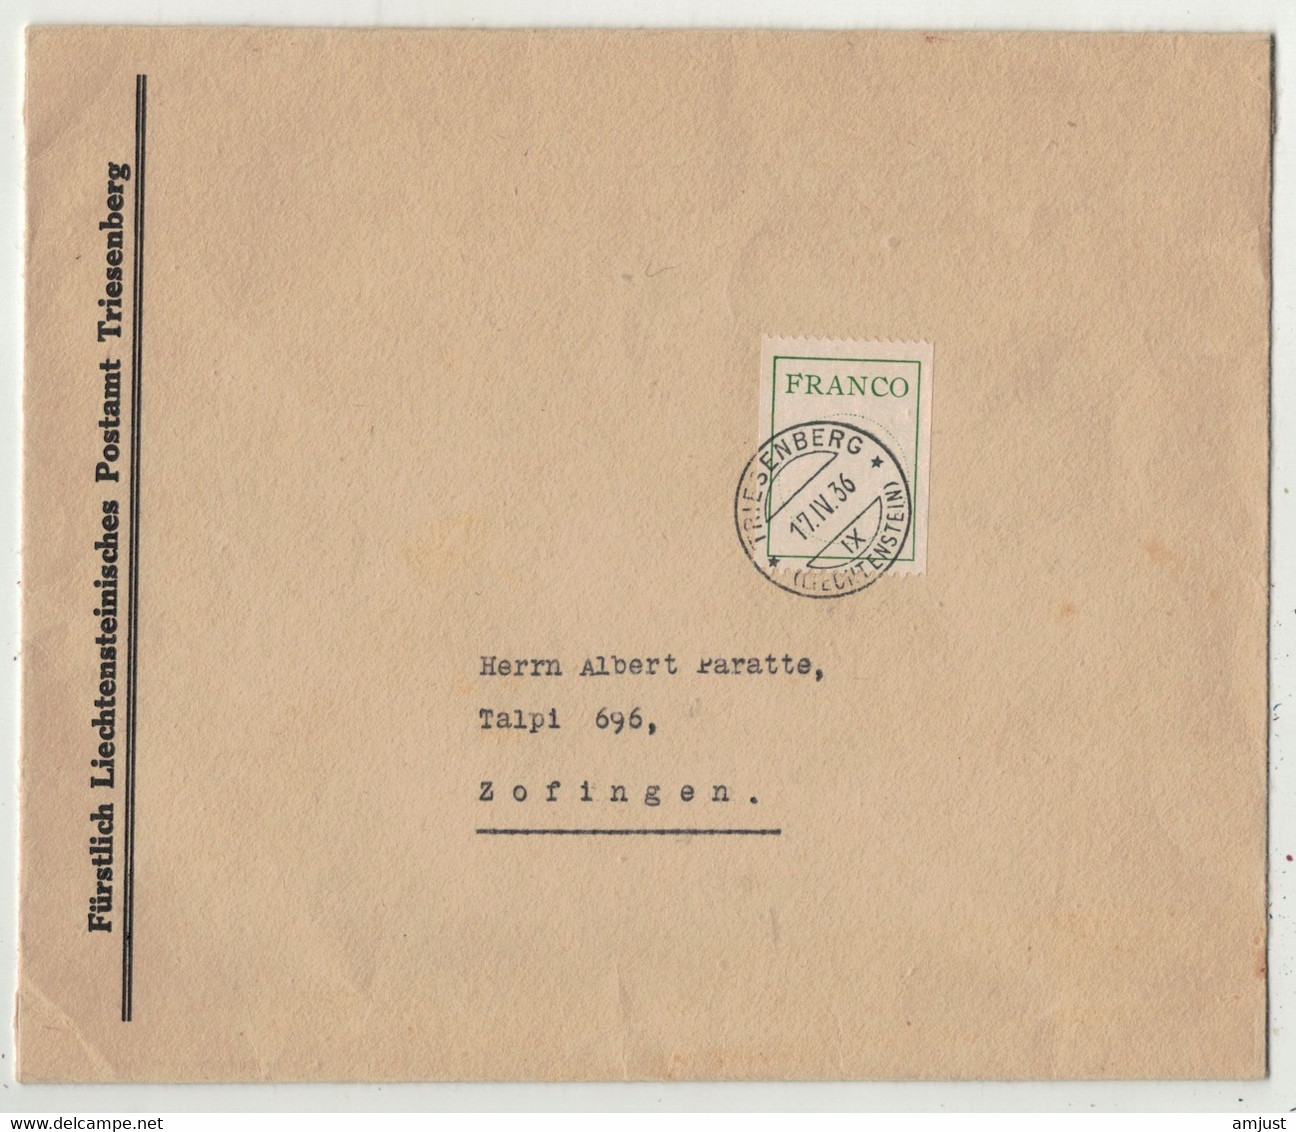 Liechtenstein // Franco 17/4/1936 Triesenberg - Postage Due